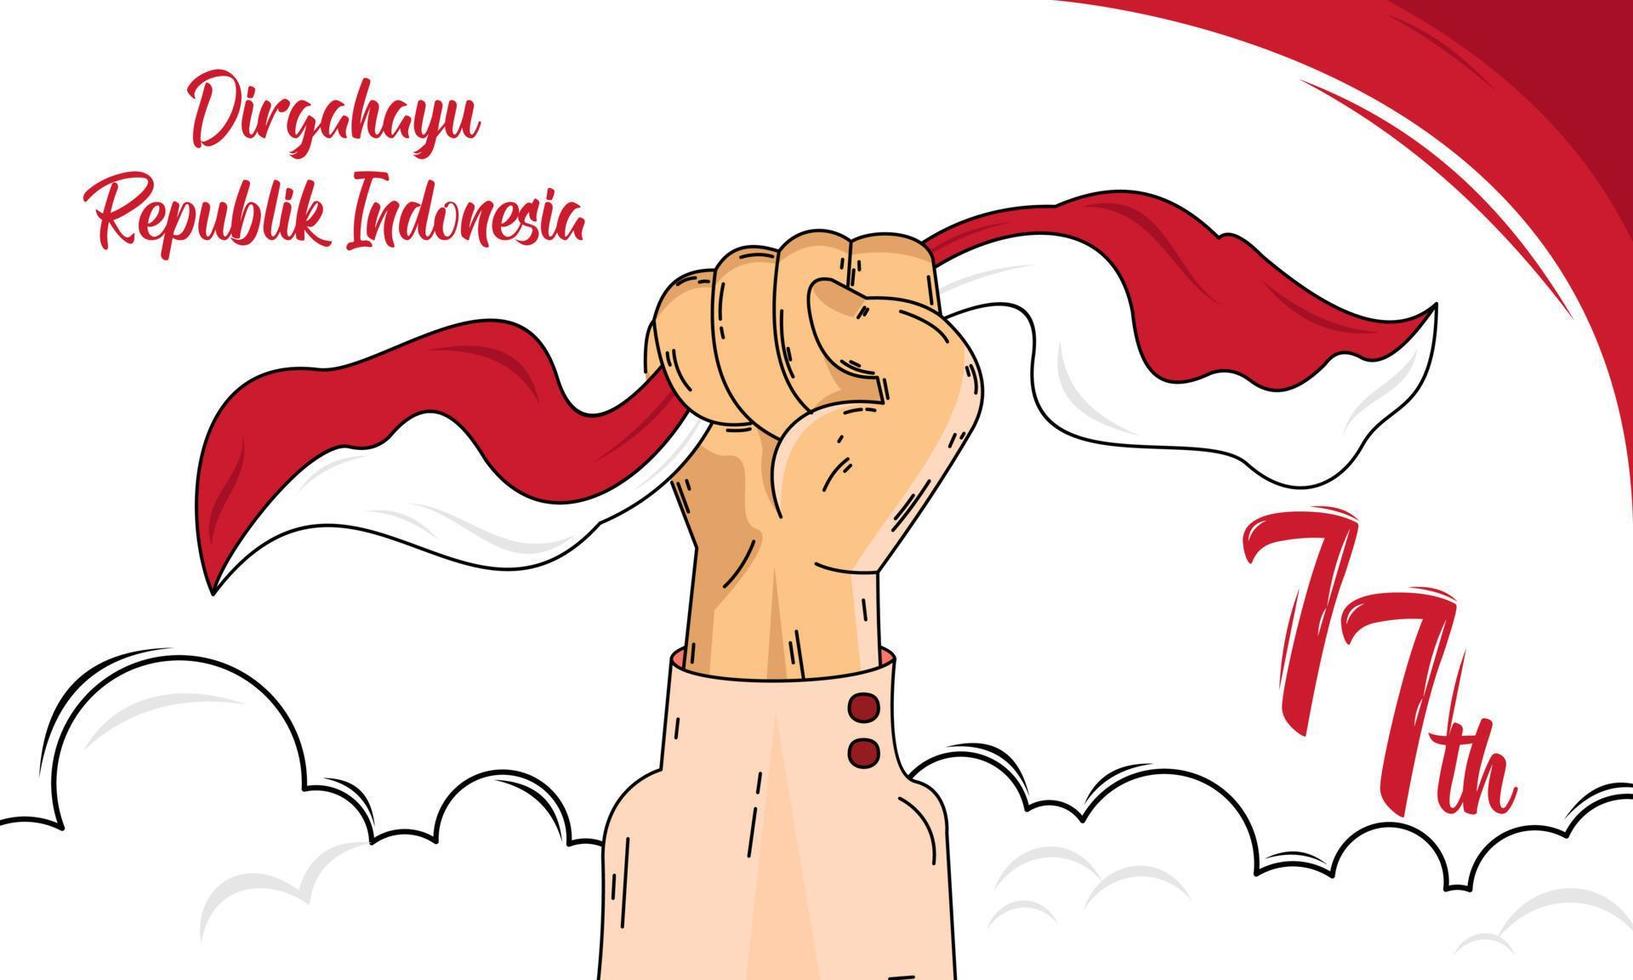 Merdeka Indonesien. glücklicher 77. indonesischer unabhängigkeitstag vektor